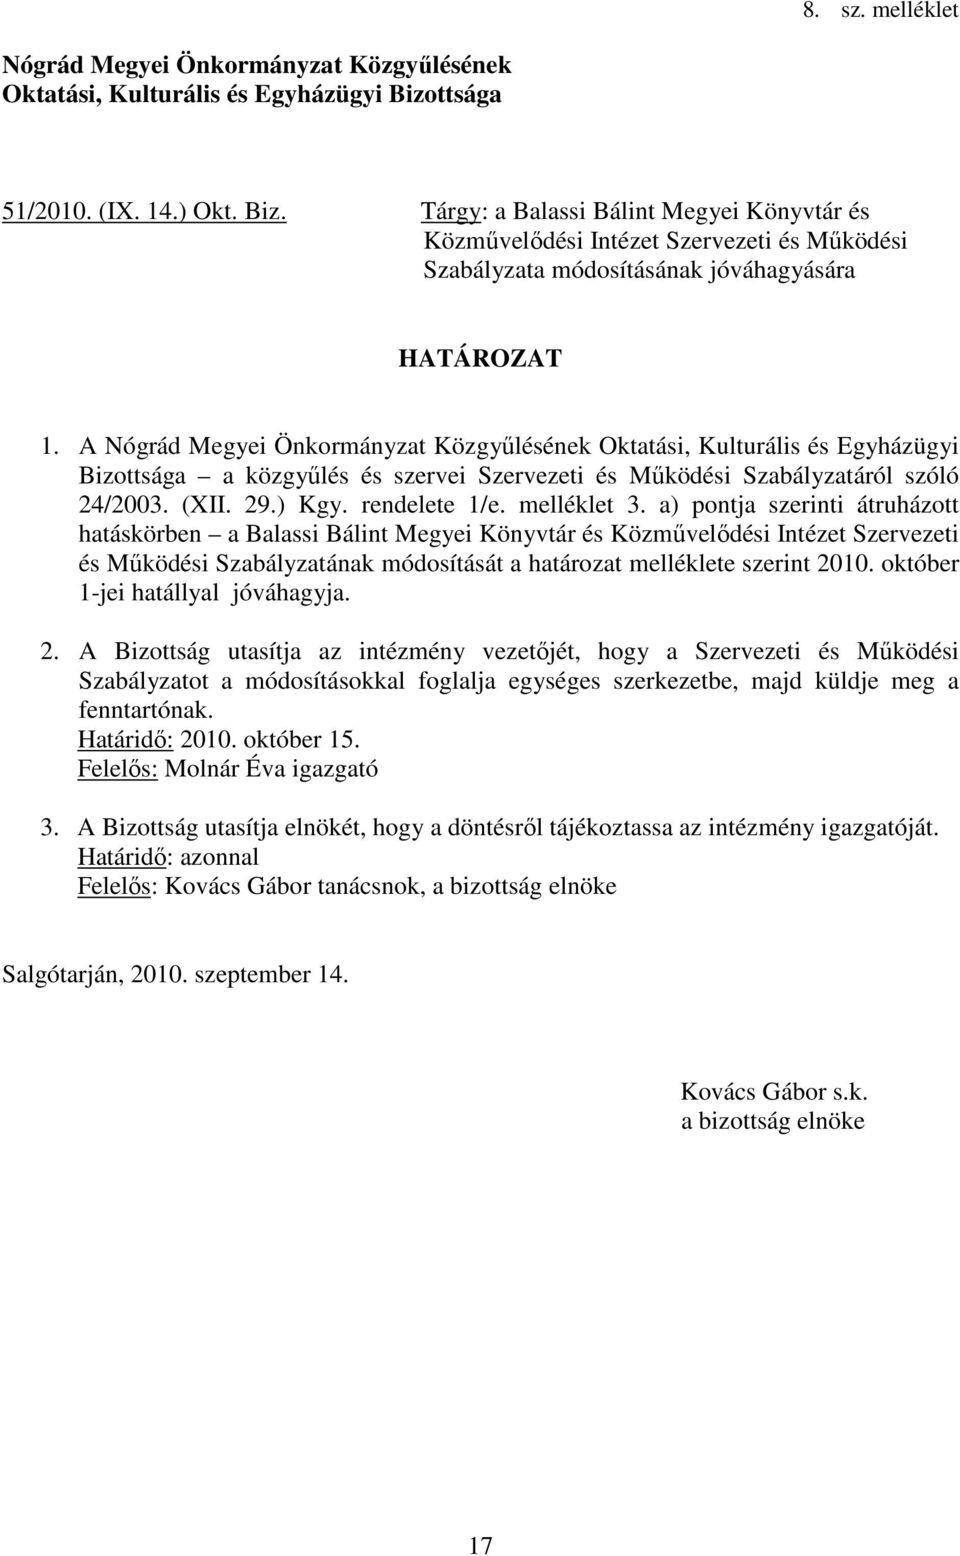 A Nógrád Megyei Önkormányzat Közgyűlésének Oktatási, Kulturális és Egyházügyi Bizottsága a közgyűlés és szervei Szervezeti és Működési Szabályzatáról szóló 24/2003. (XII. 29.) Kgy. rendelete 1/e.